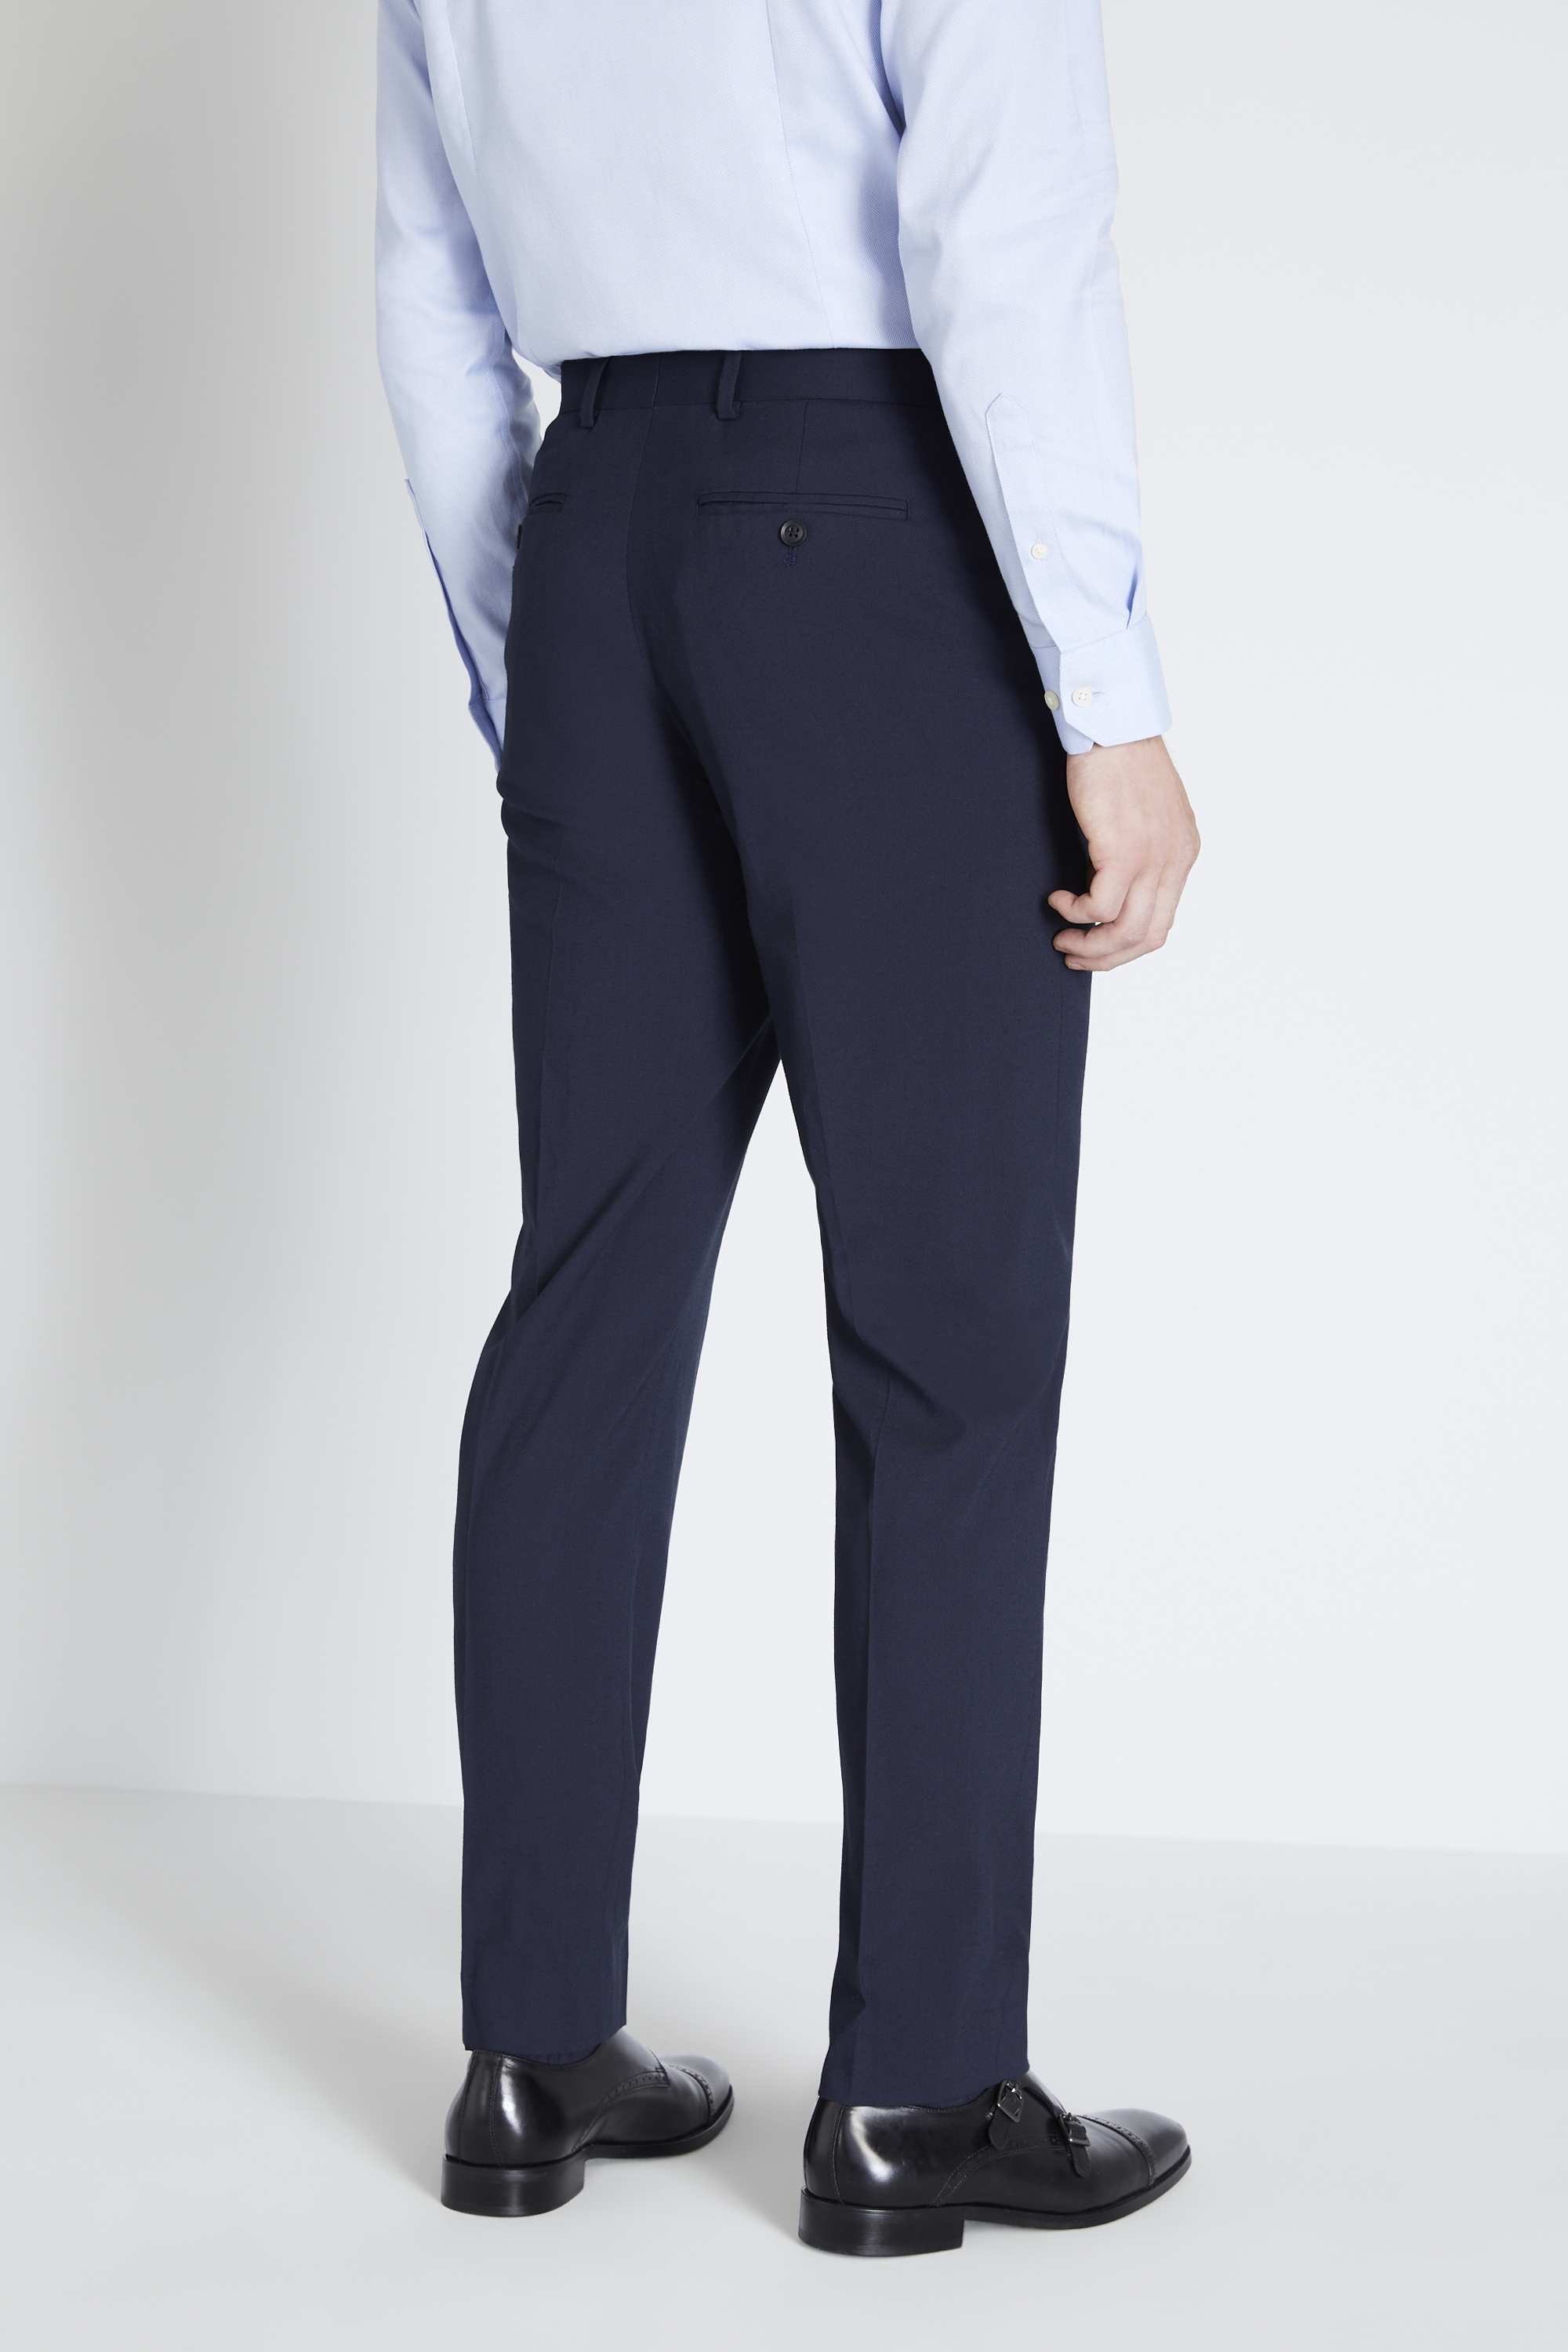 Regular Fit Blue Sharkskin Trousers | Buy Online at Moss